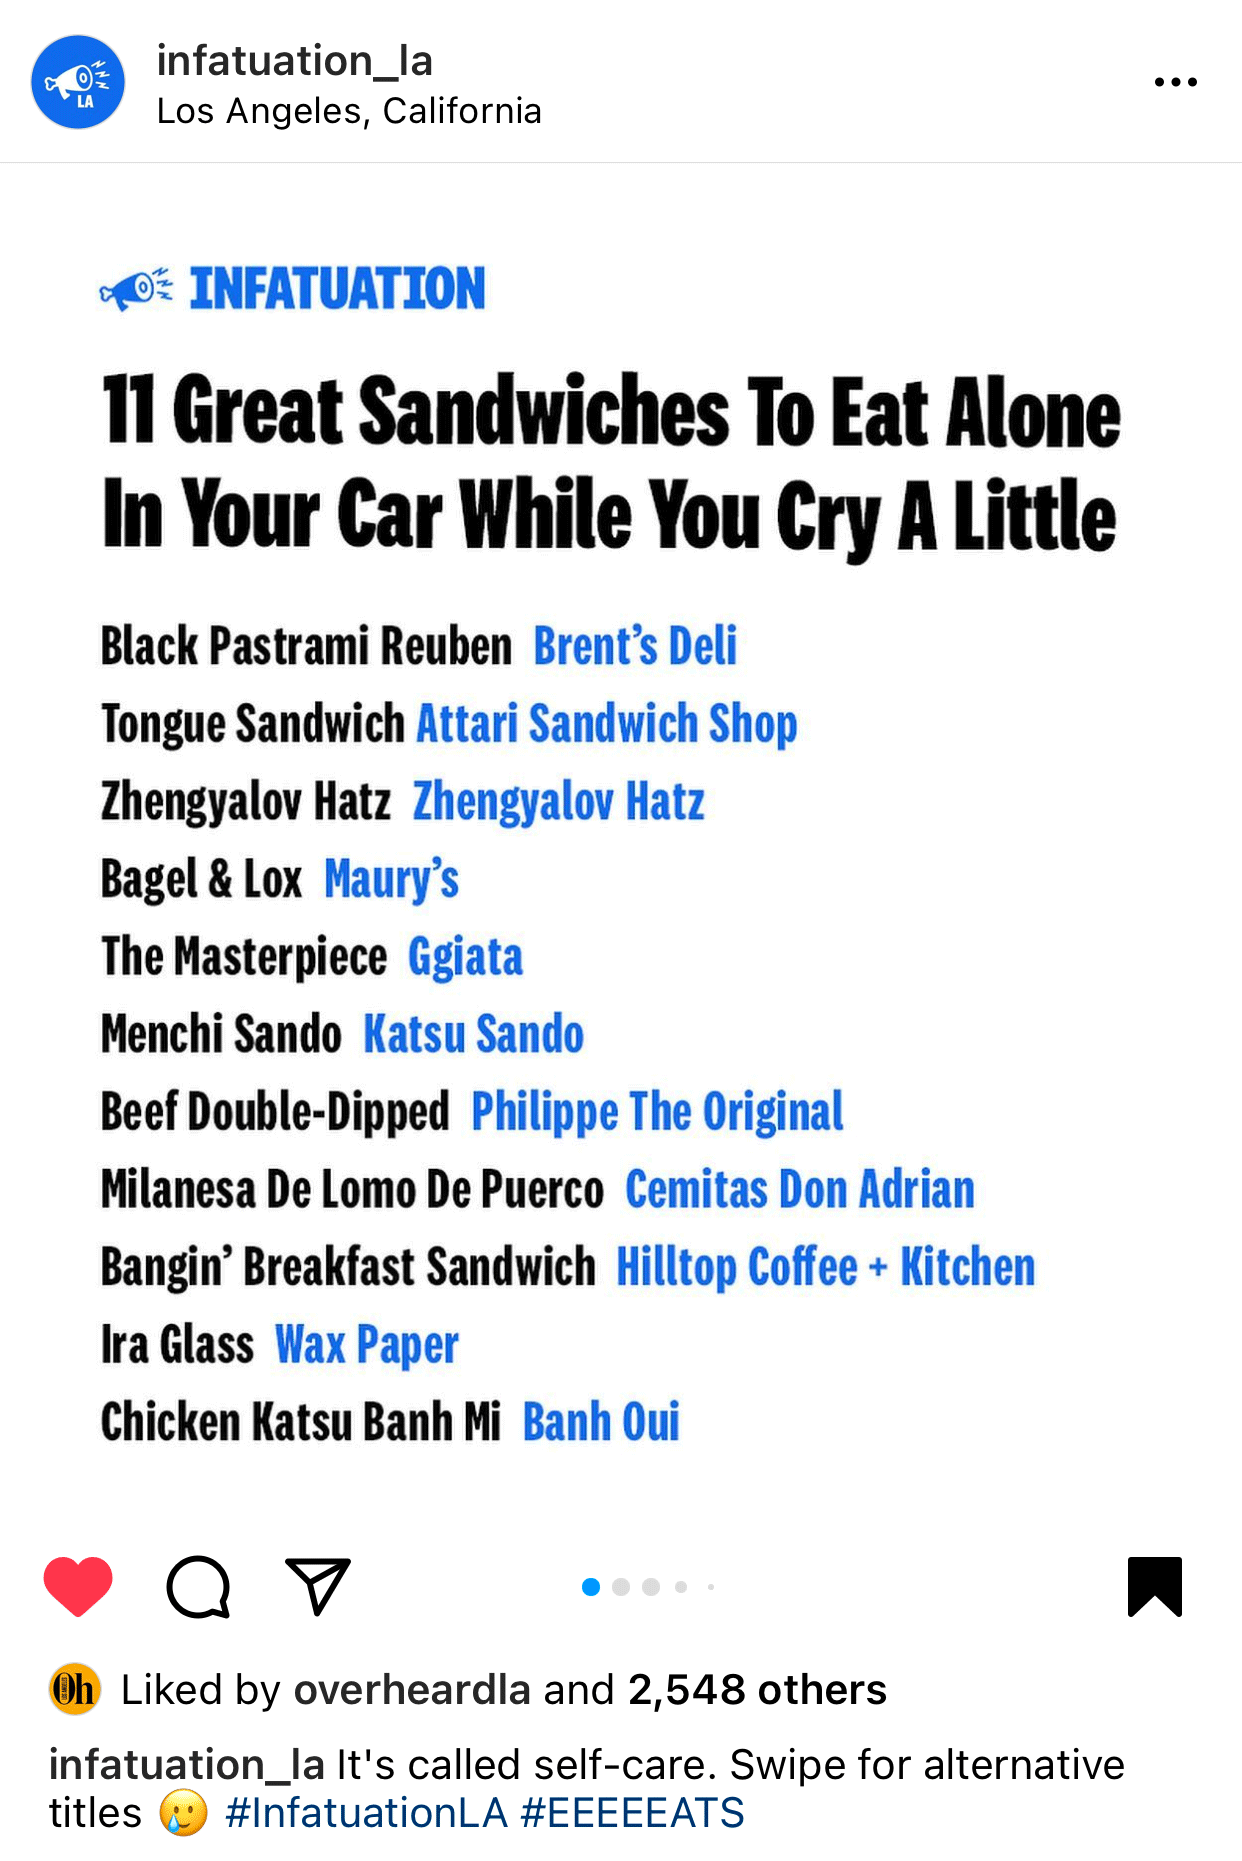 infatuation LA sandwiches